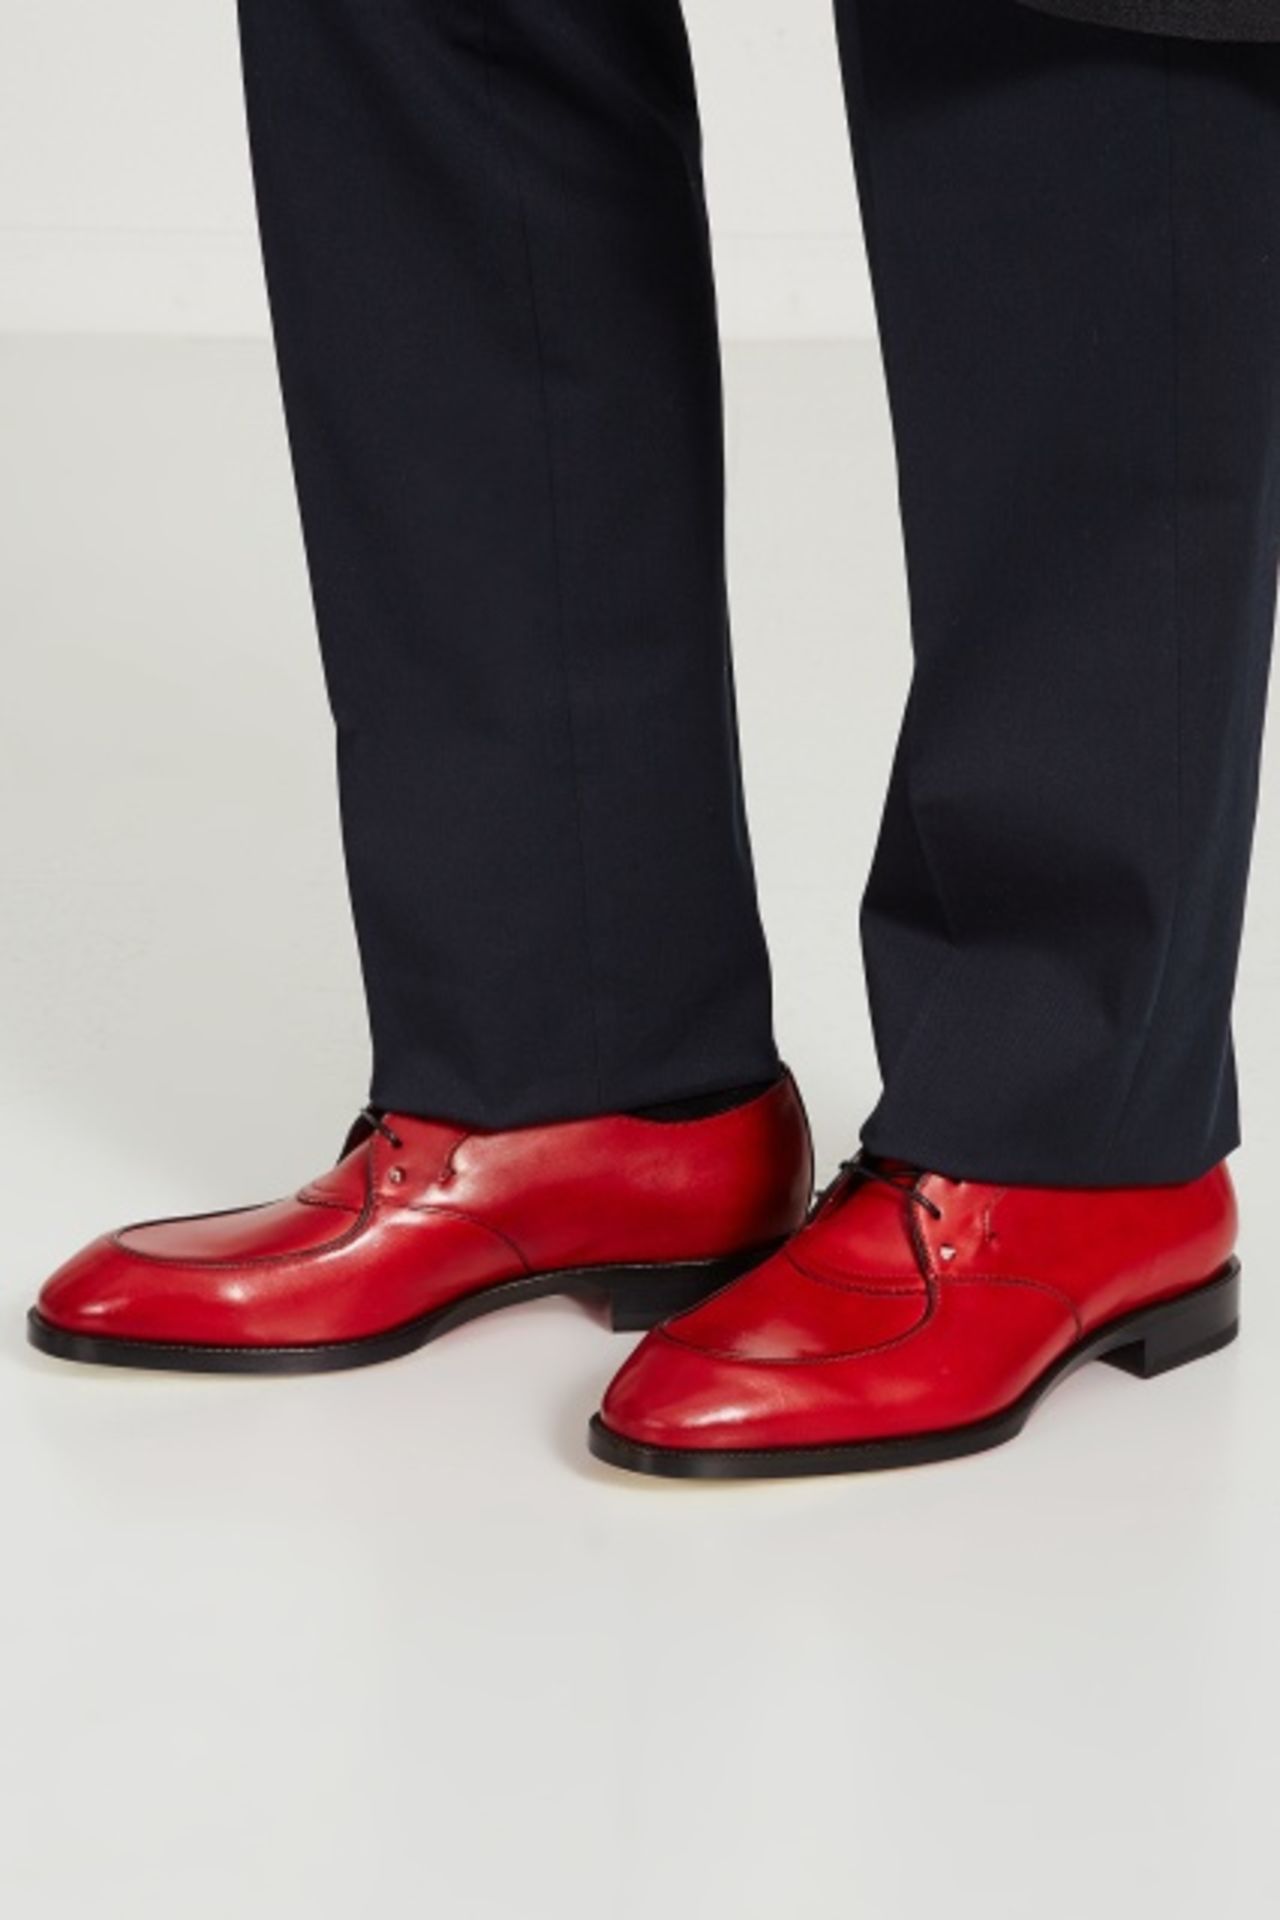 Красный туфли мужской. Мужские пенни лоферы Кристиан лабутен. Christian louboutin мужская обувь красная. Красные лакированные туфли мужские.